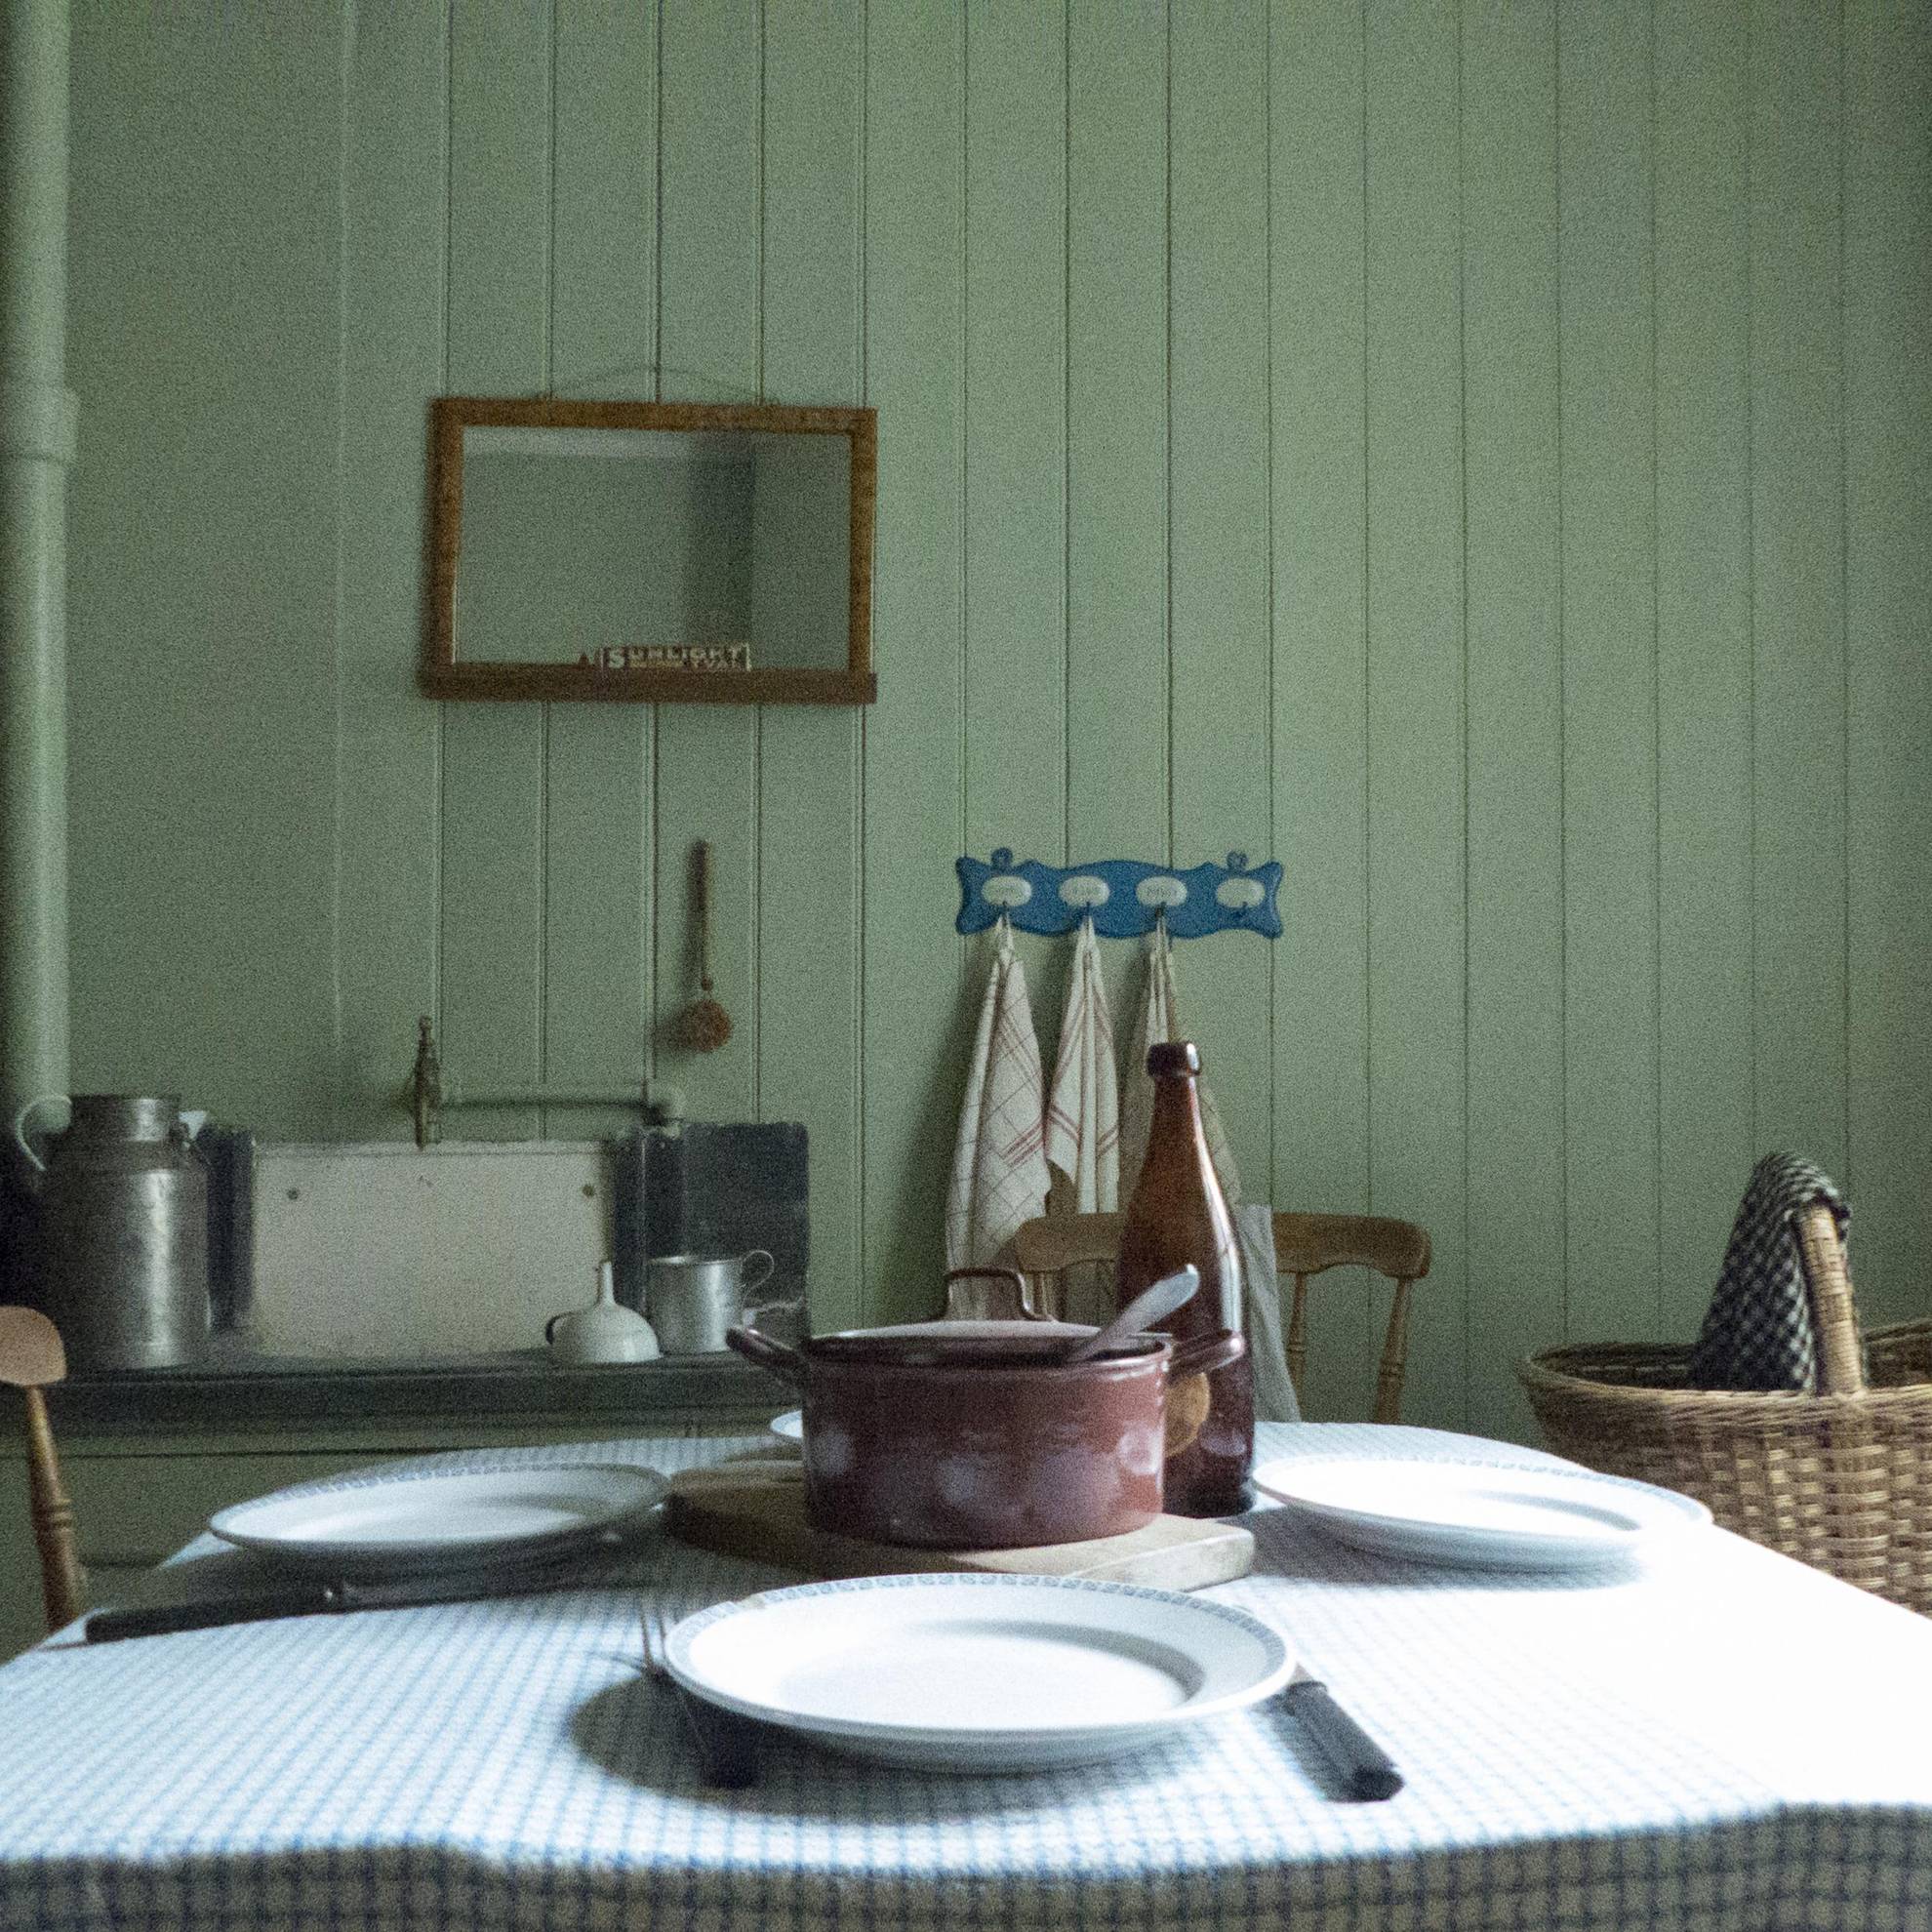 À l'intérieur d'une maison ouvrière dans la première banlieue de Göteborg aux XIXe et XXe siècles. Une table dressée avec un pot en fer au milieu. Un miroir est accroché sur un mur en bois vert.